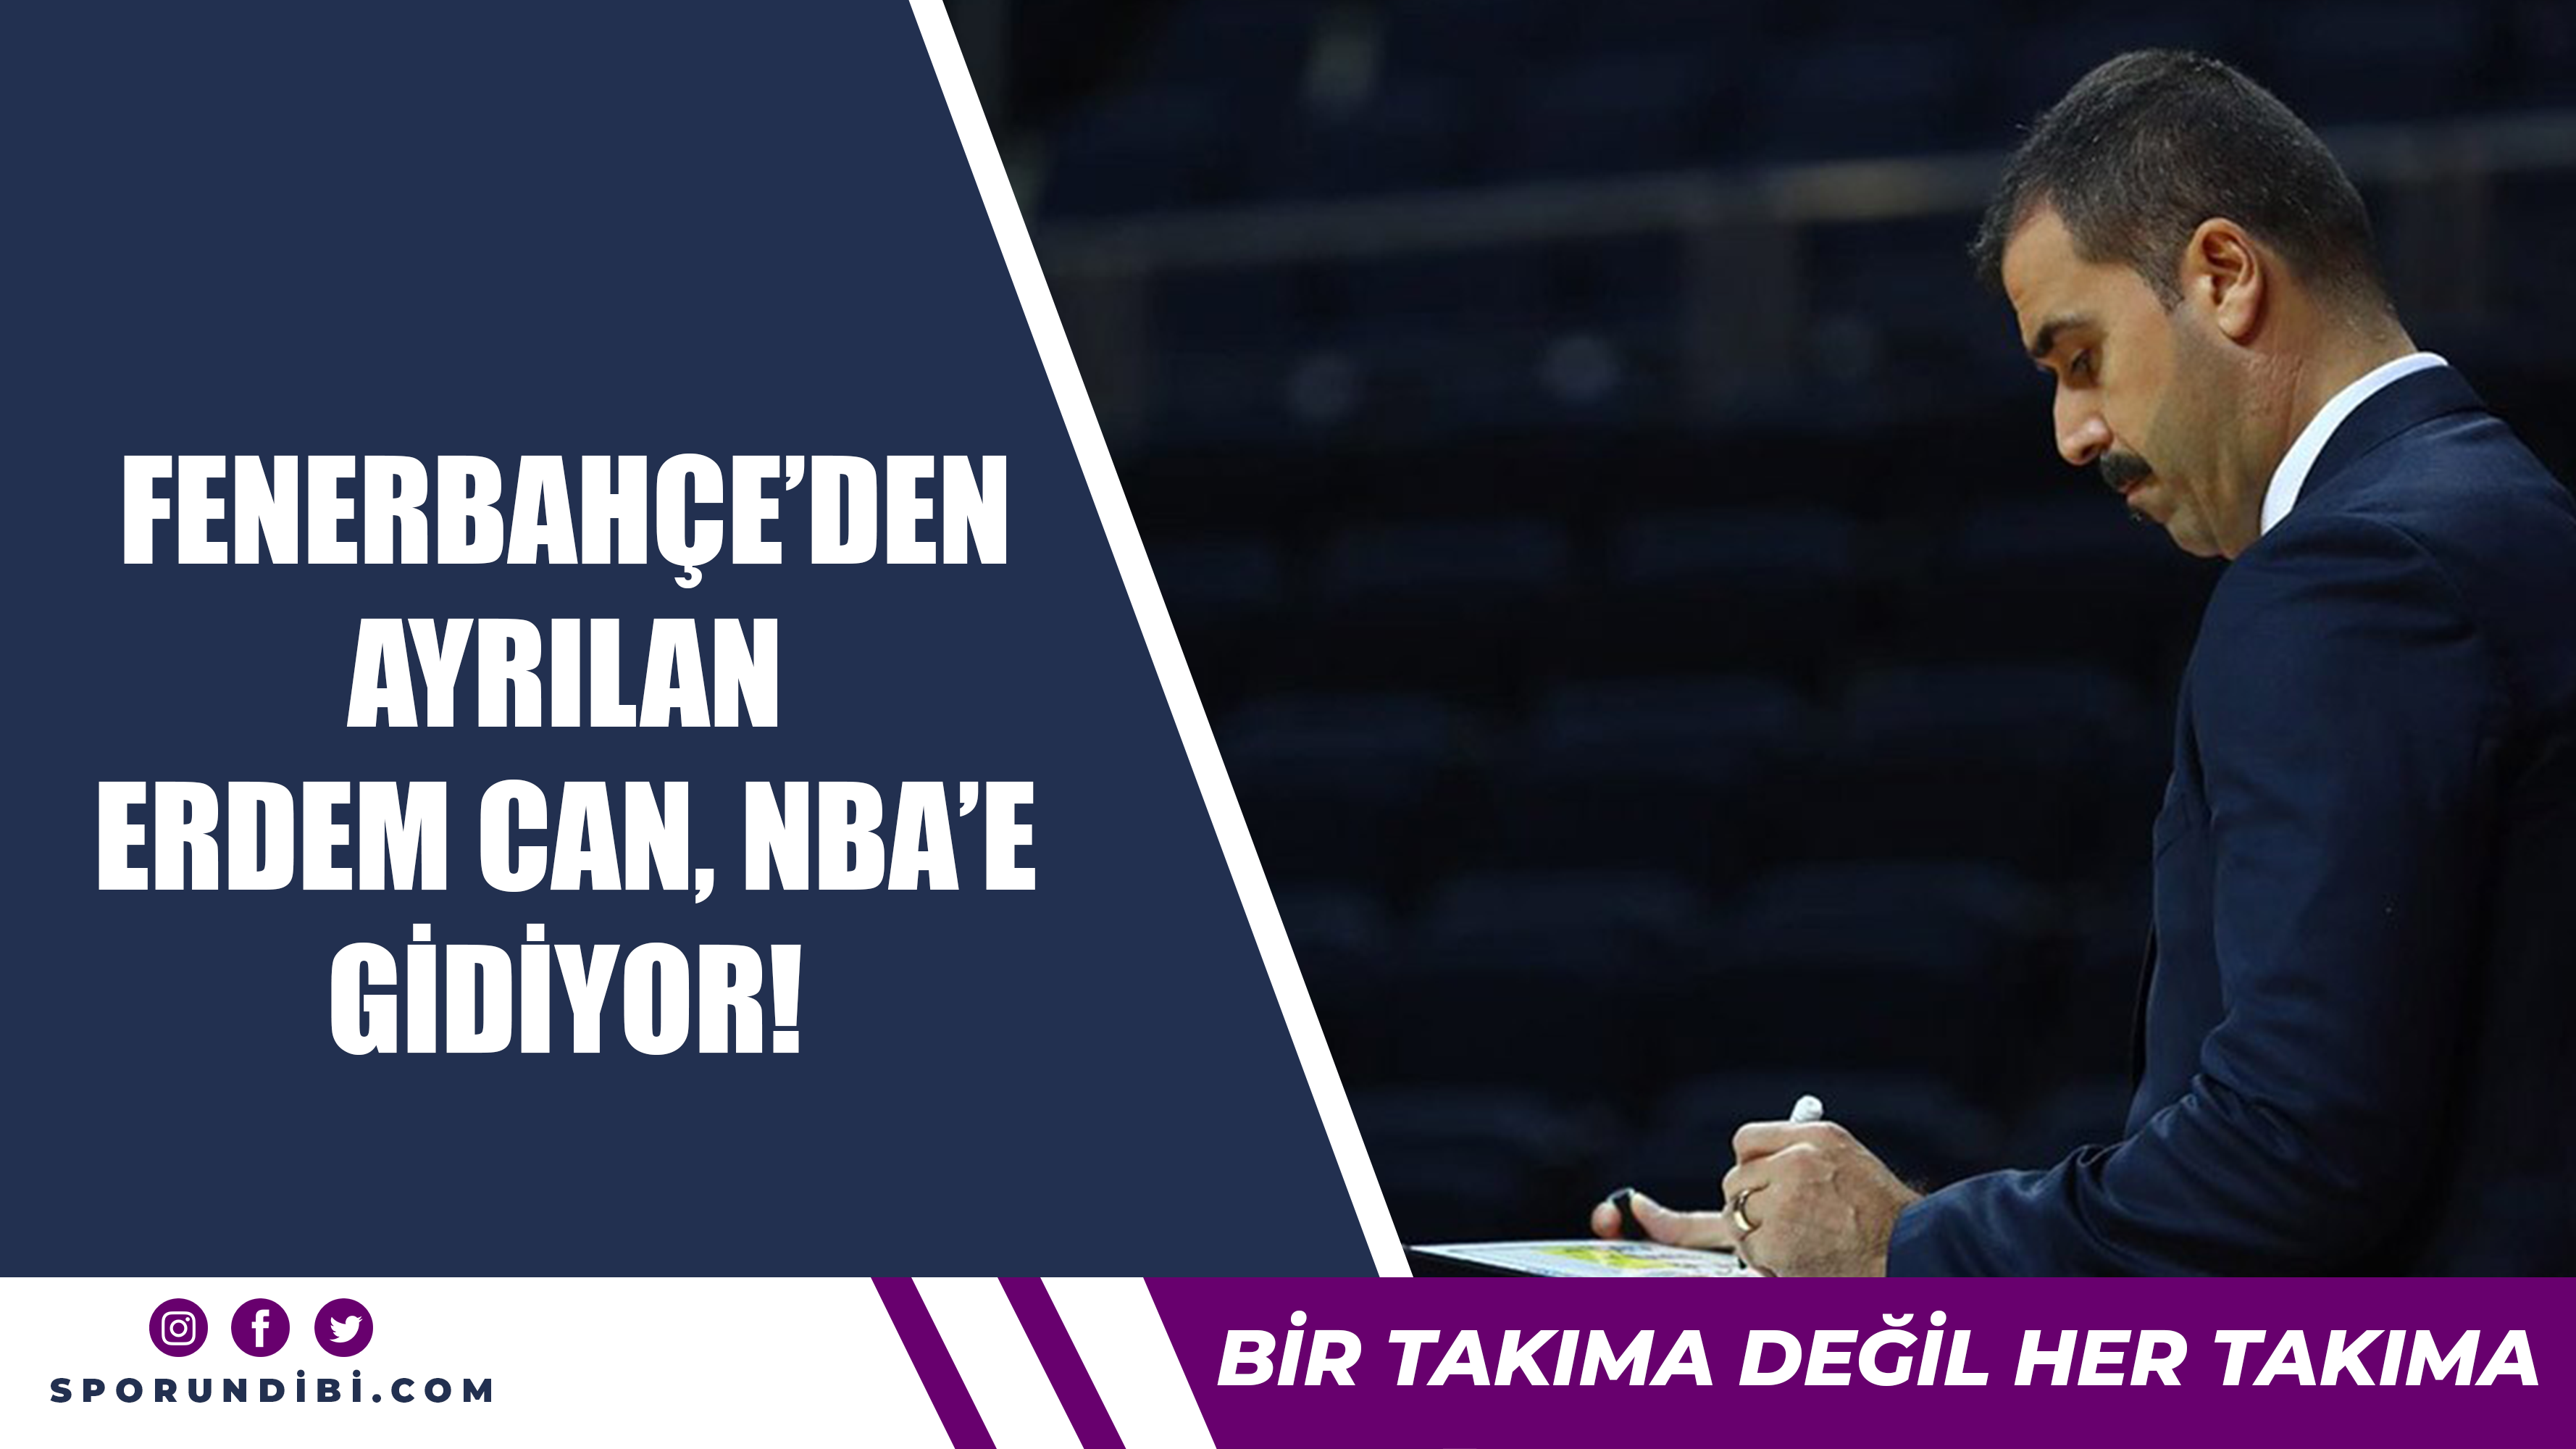 Fenerbahçe'den ayrılan Erdem Can, NBA'e gidiyor!